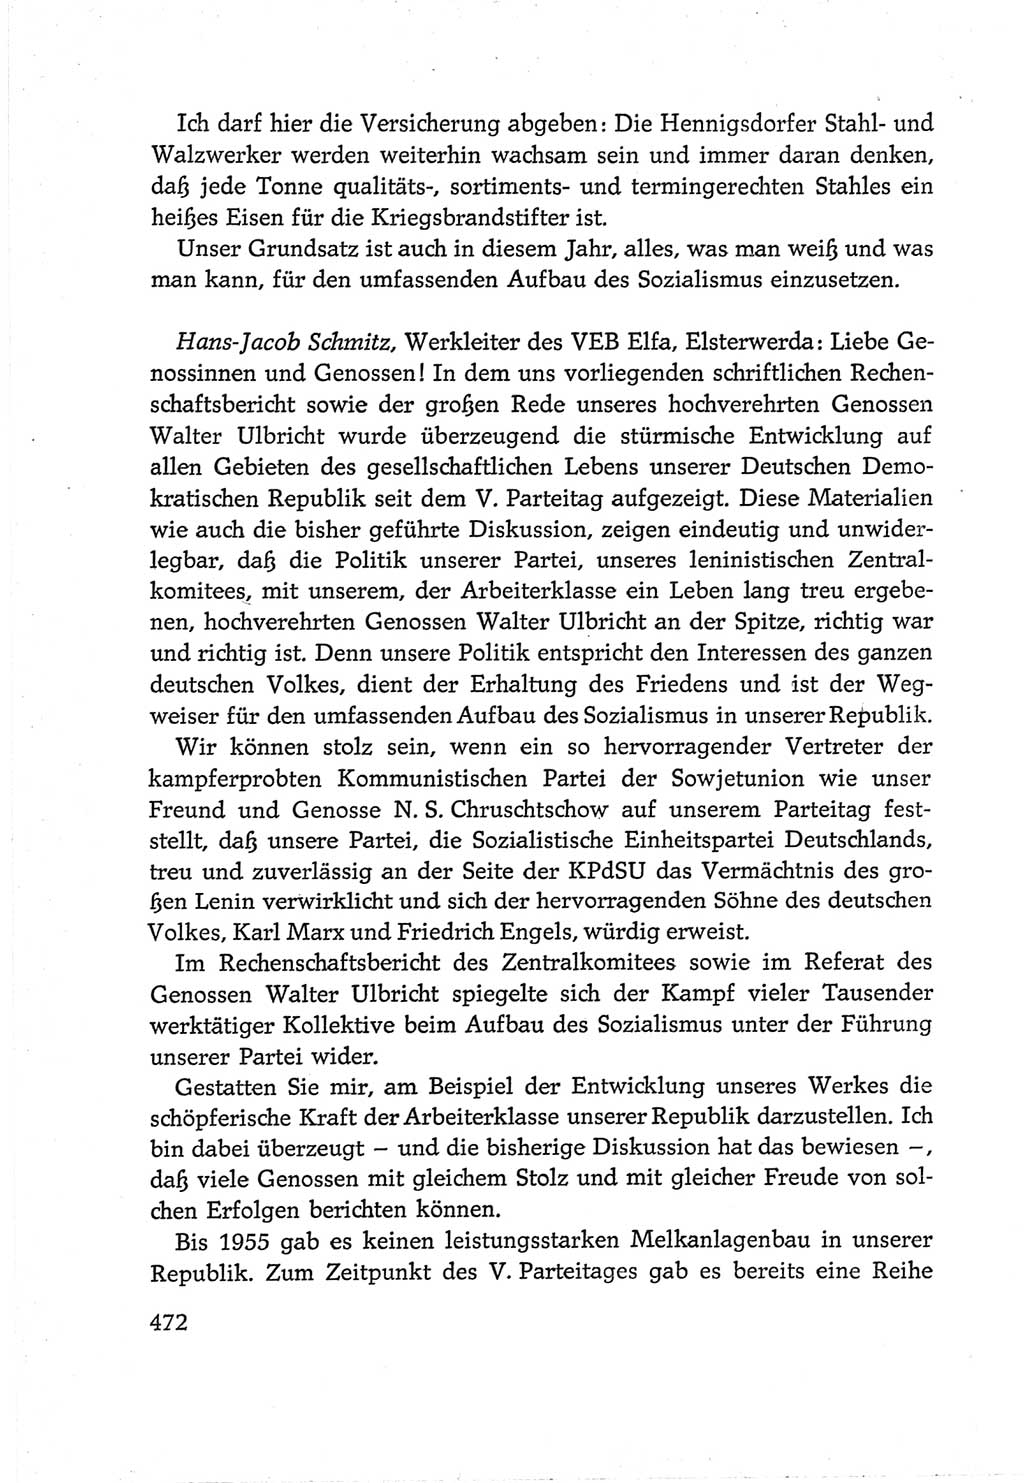 Protokoll der Verhandlungen des Ⅵ. Parteitages der Sozialistischen Einheitspartei Deutschlands (SED) [Deutsche Demokratische Republik (DDR)] 1963, Band Ⅲ, Seite 472 (Prot. Verh. Ⅵ. PT SED DDR 1963, Bd. Ⅲ, S. 472)